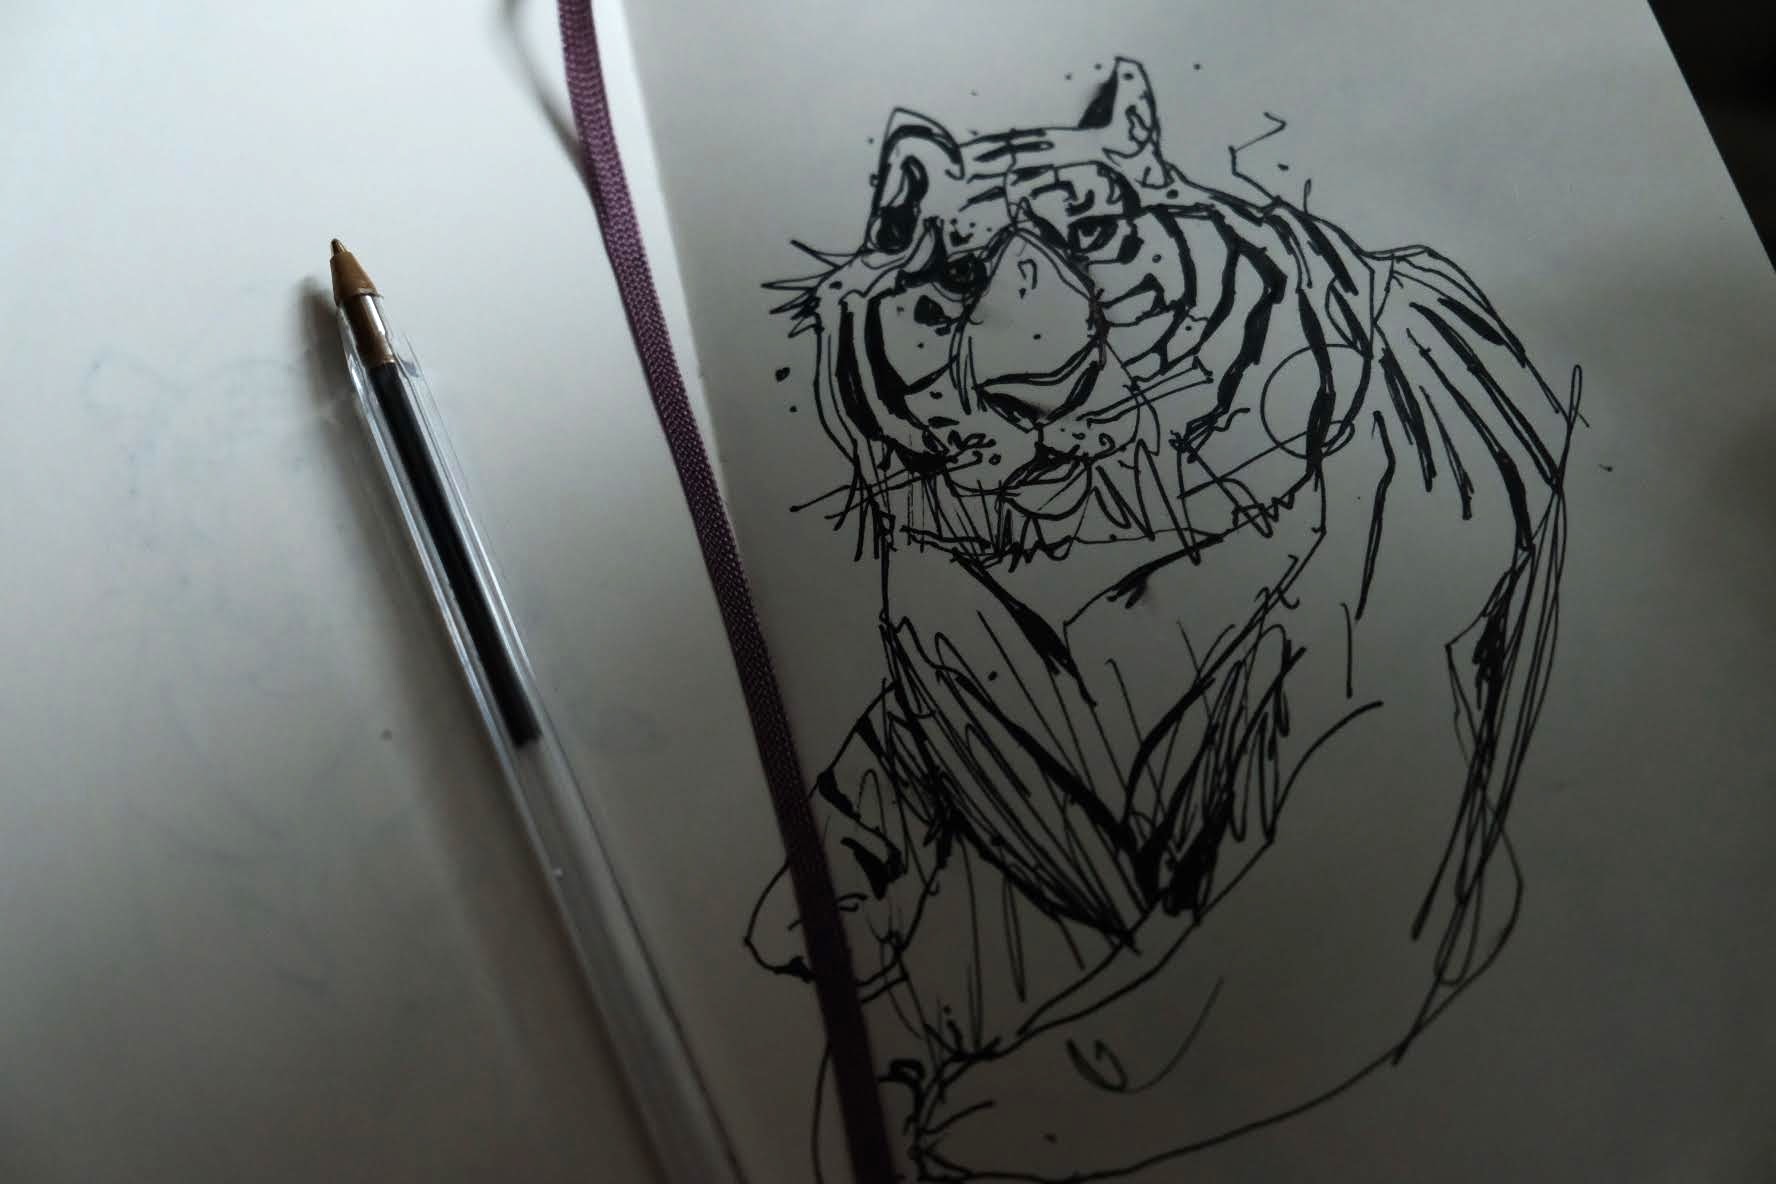 tiger sketch in moleskin sketchbook by Chris Wilson